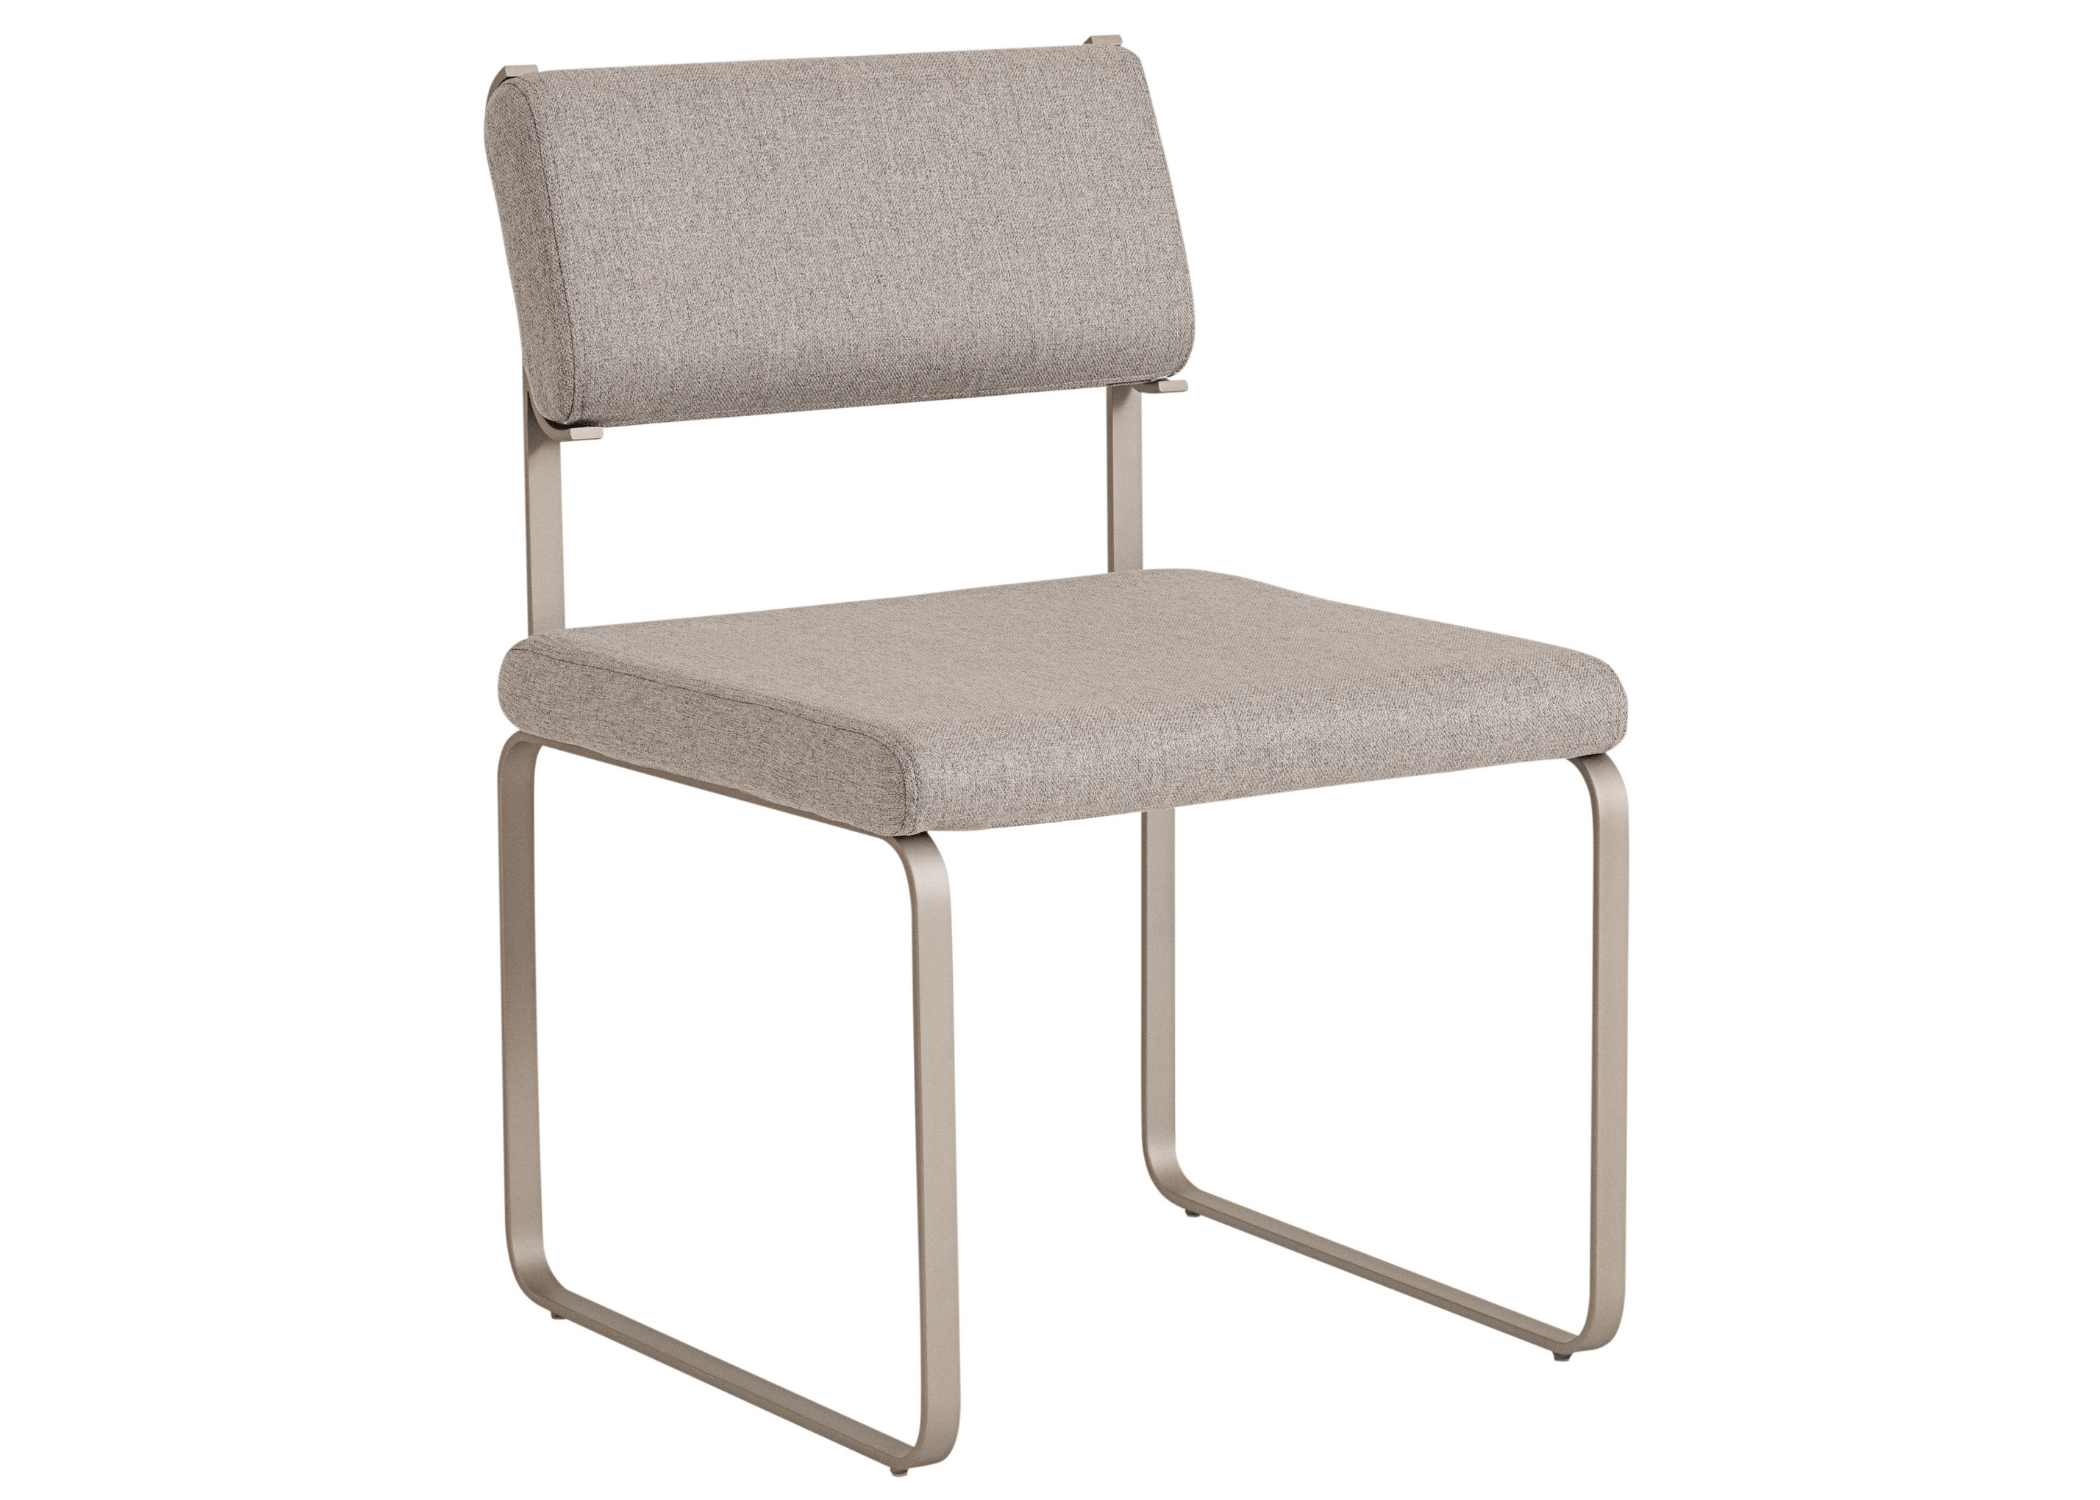 Cadeira Raquel: Design elegante e sofisticado.